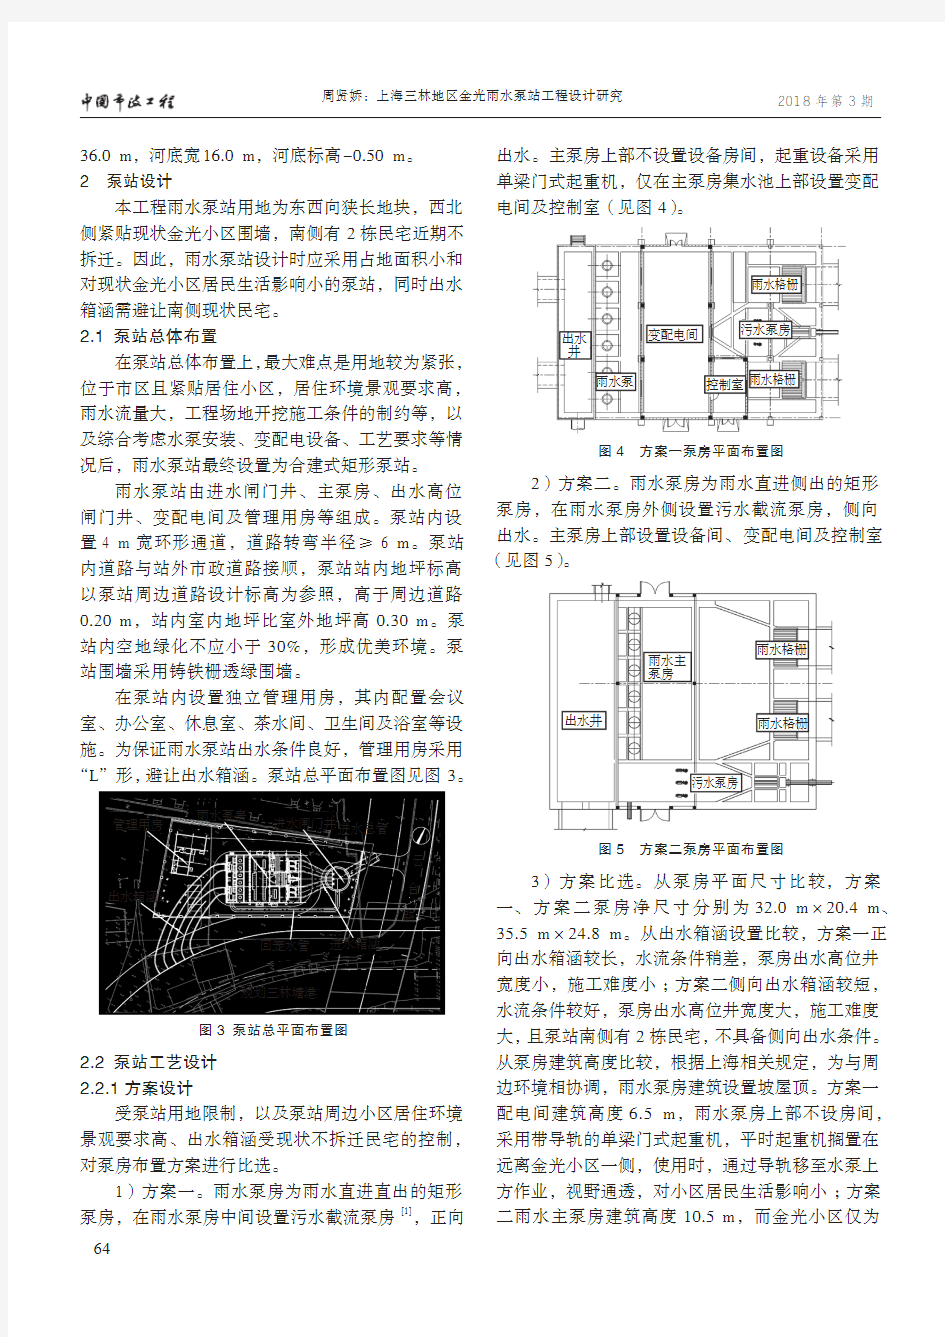 上海三林地区金光雨水泵站工程设计研究